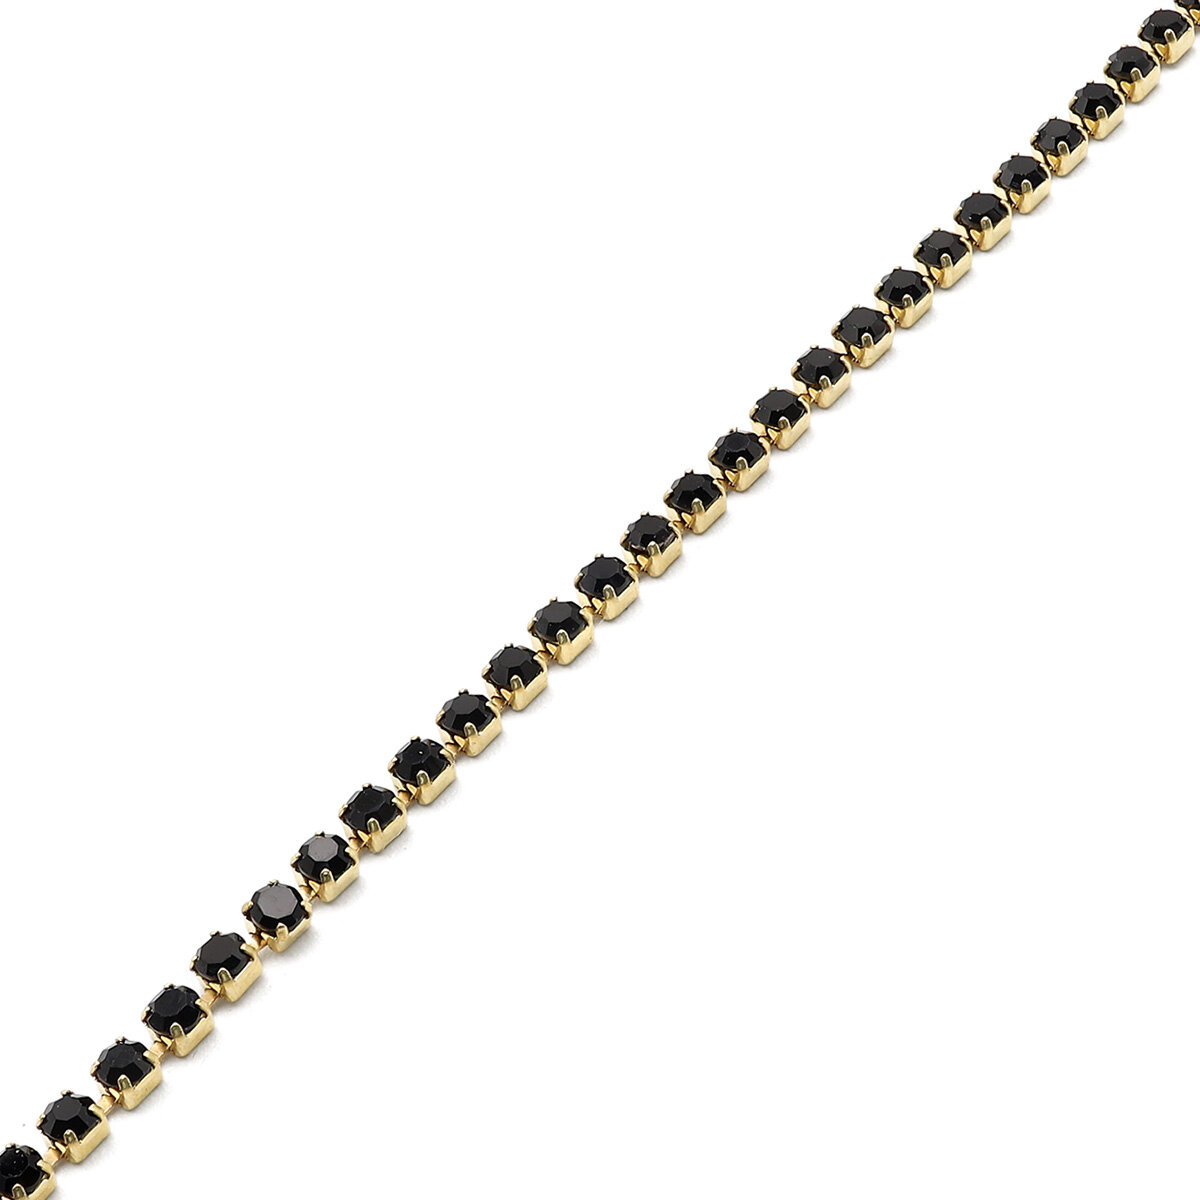 ЦС012ЗЦ2 Стразовые цепочки (золото), цвет черный, размер 2 мм, 30 см/упак